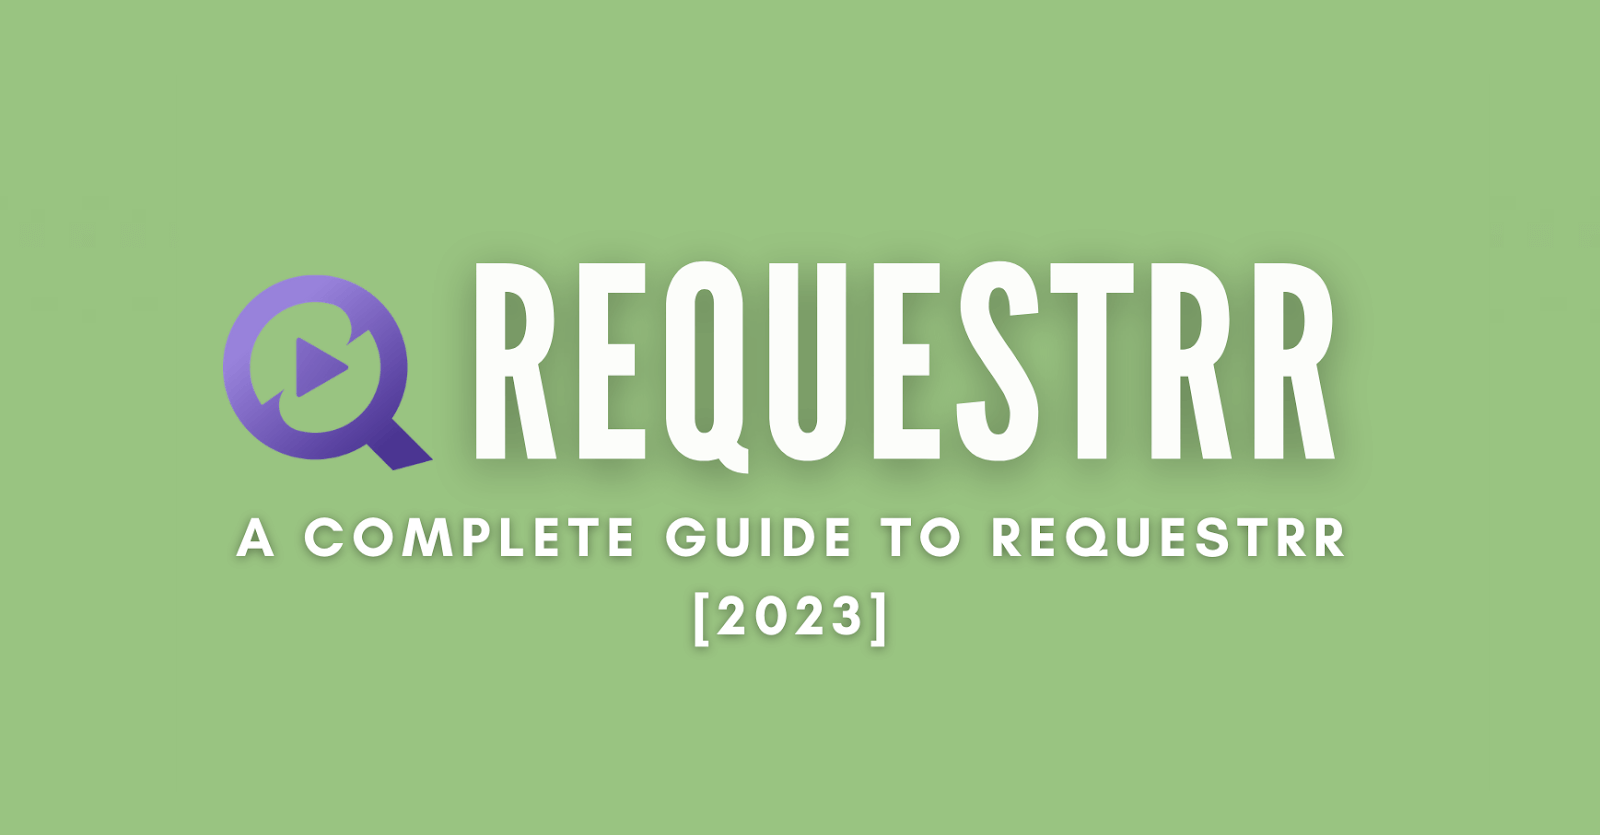 Requestrr guide